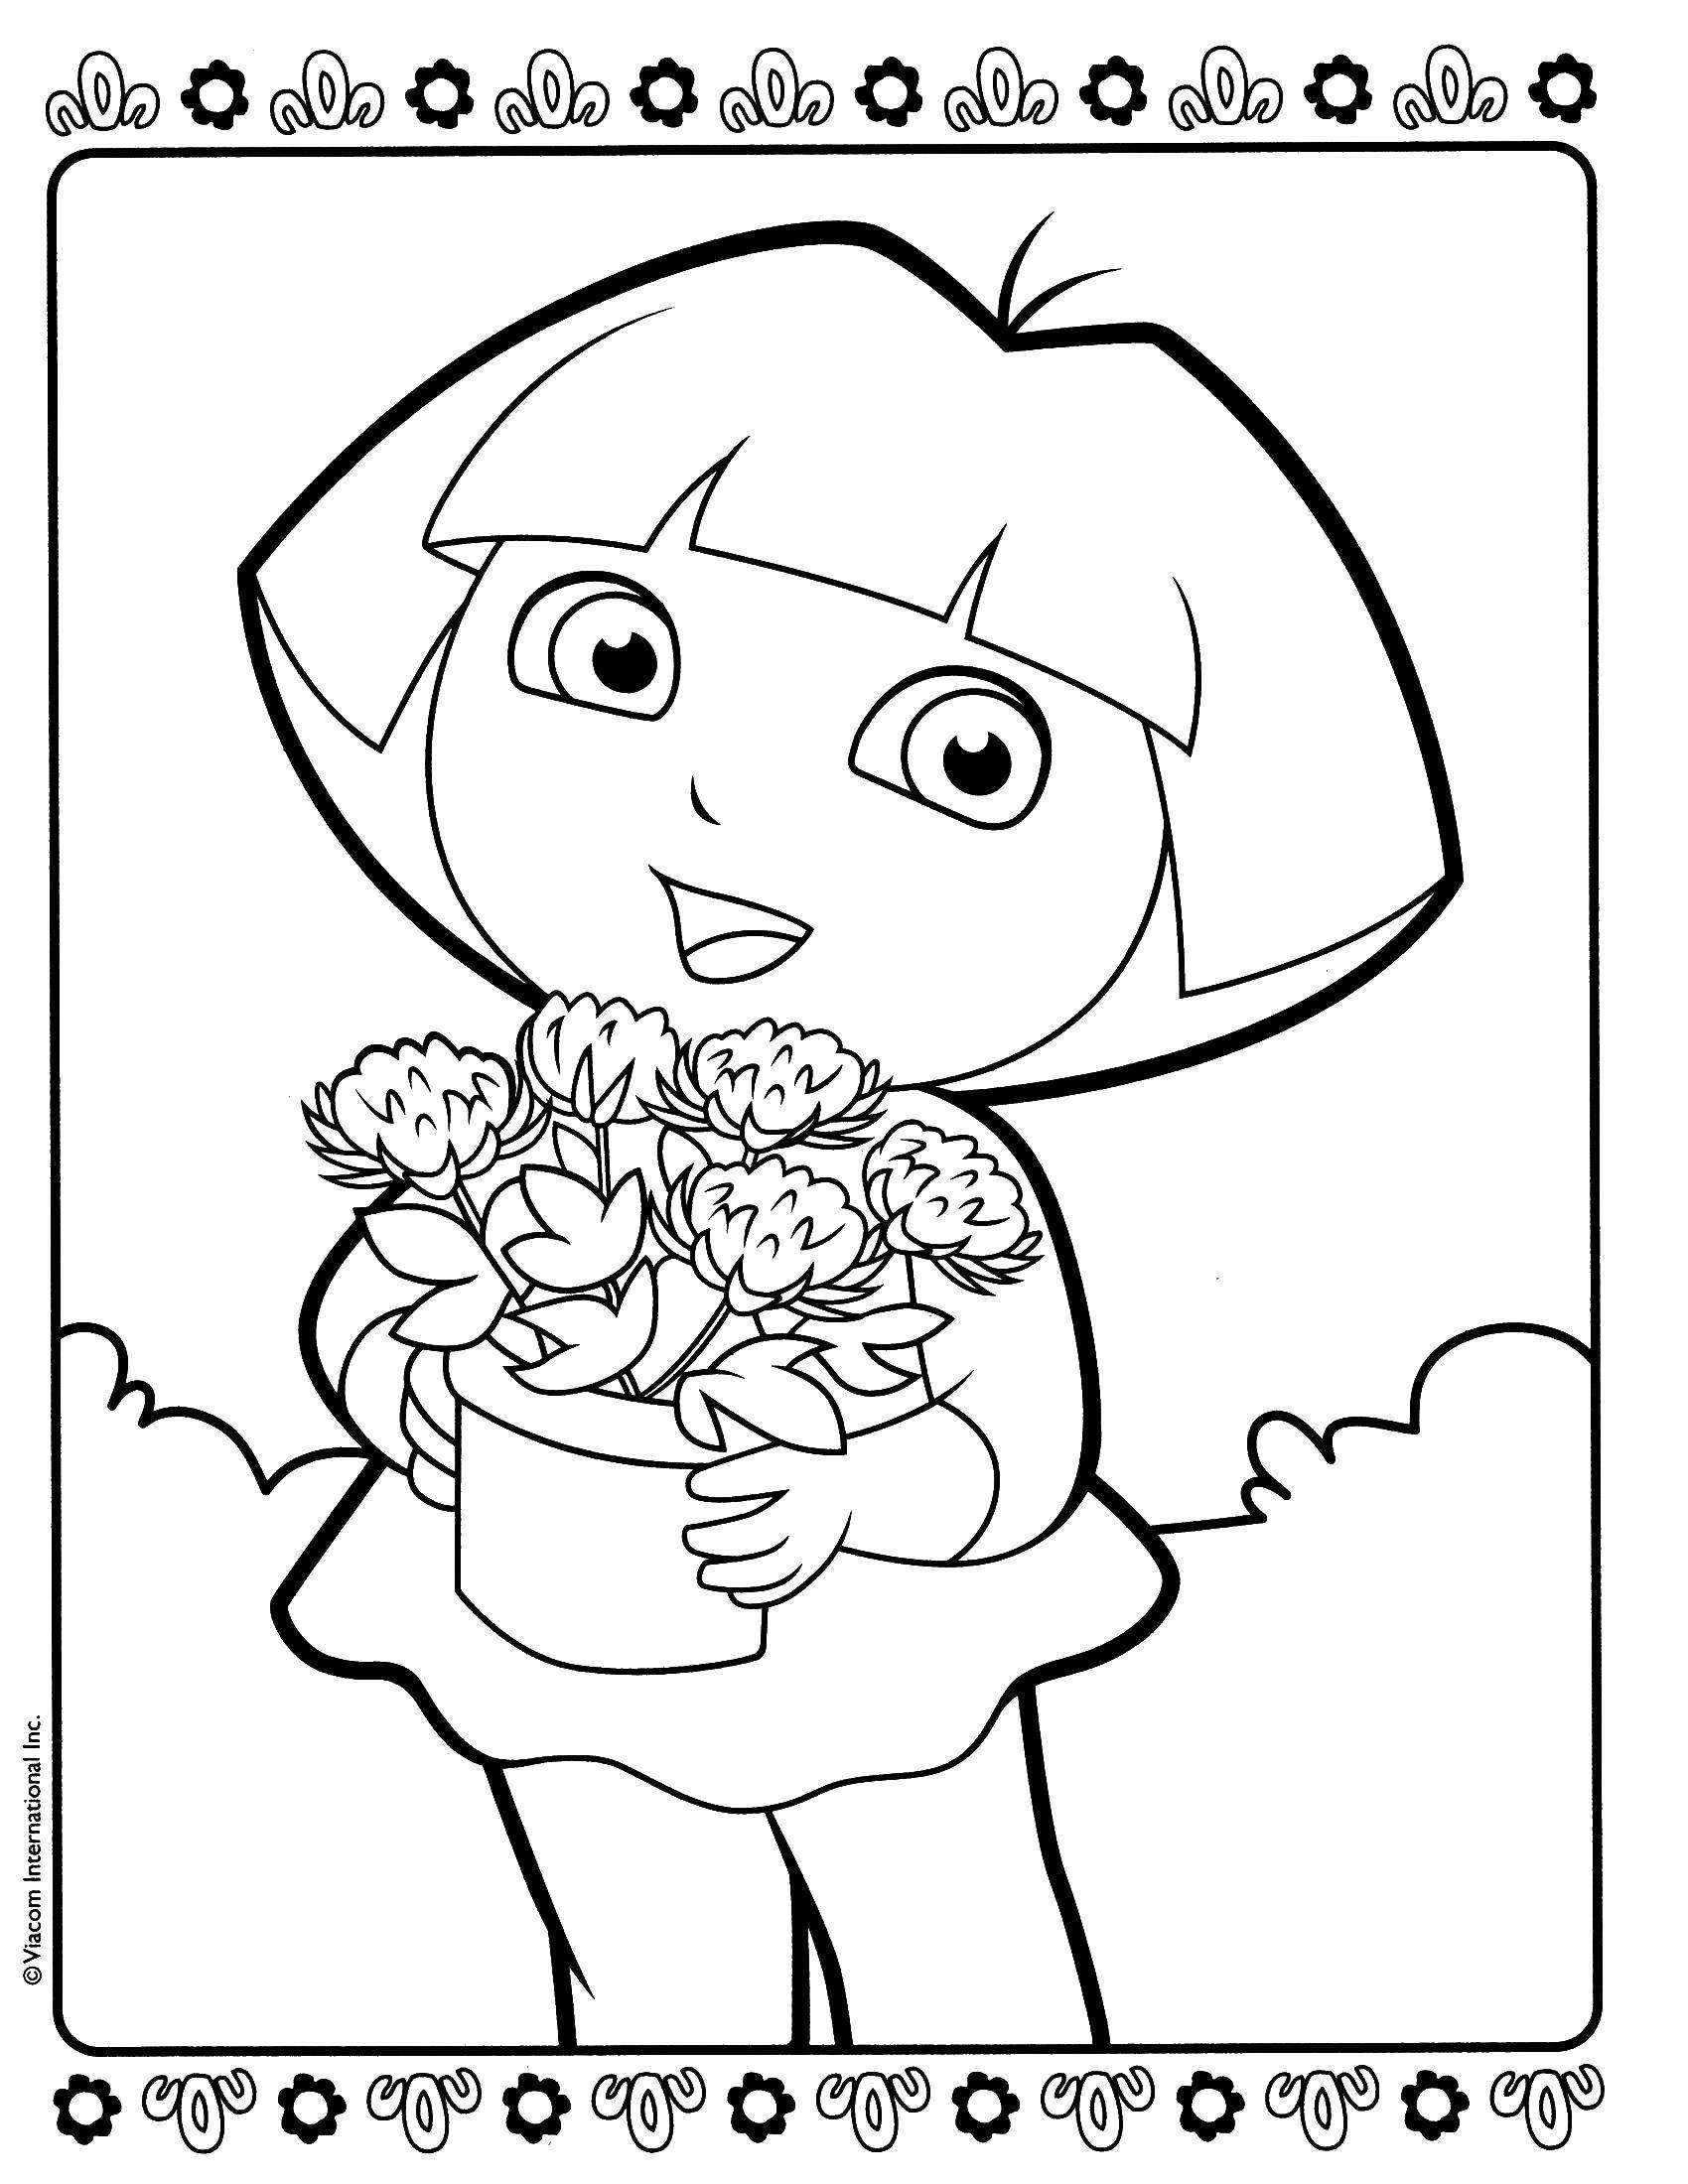 Опис: розмальовки  Даша любить квіти. Категорія: даша мандрівниця. Теги:  Персонаж з мультфільму.